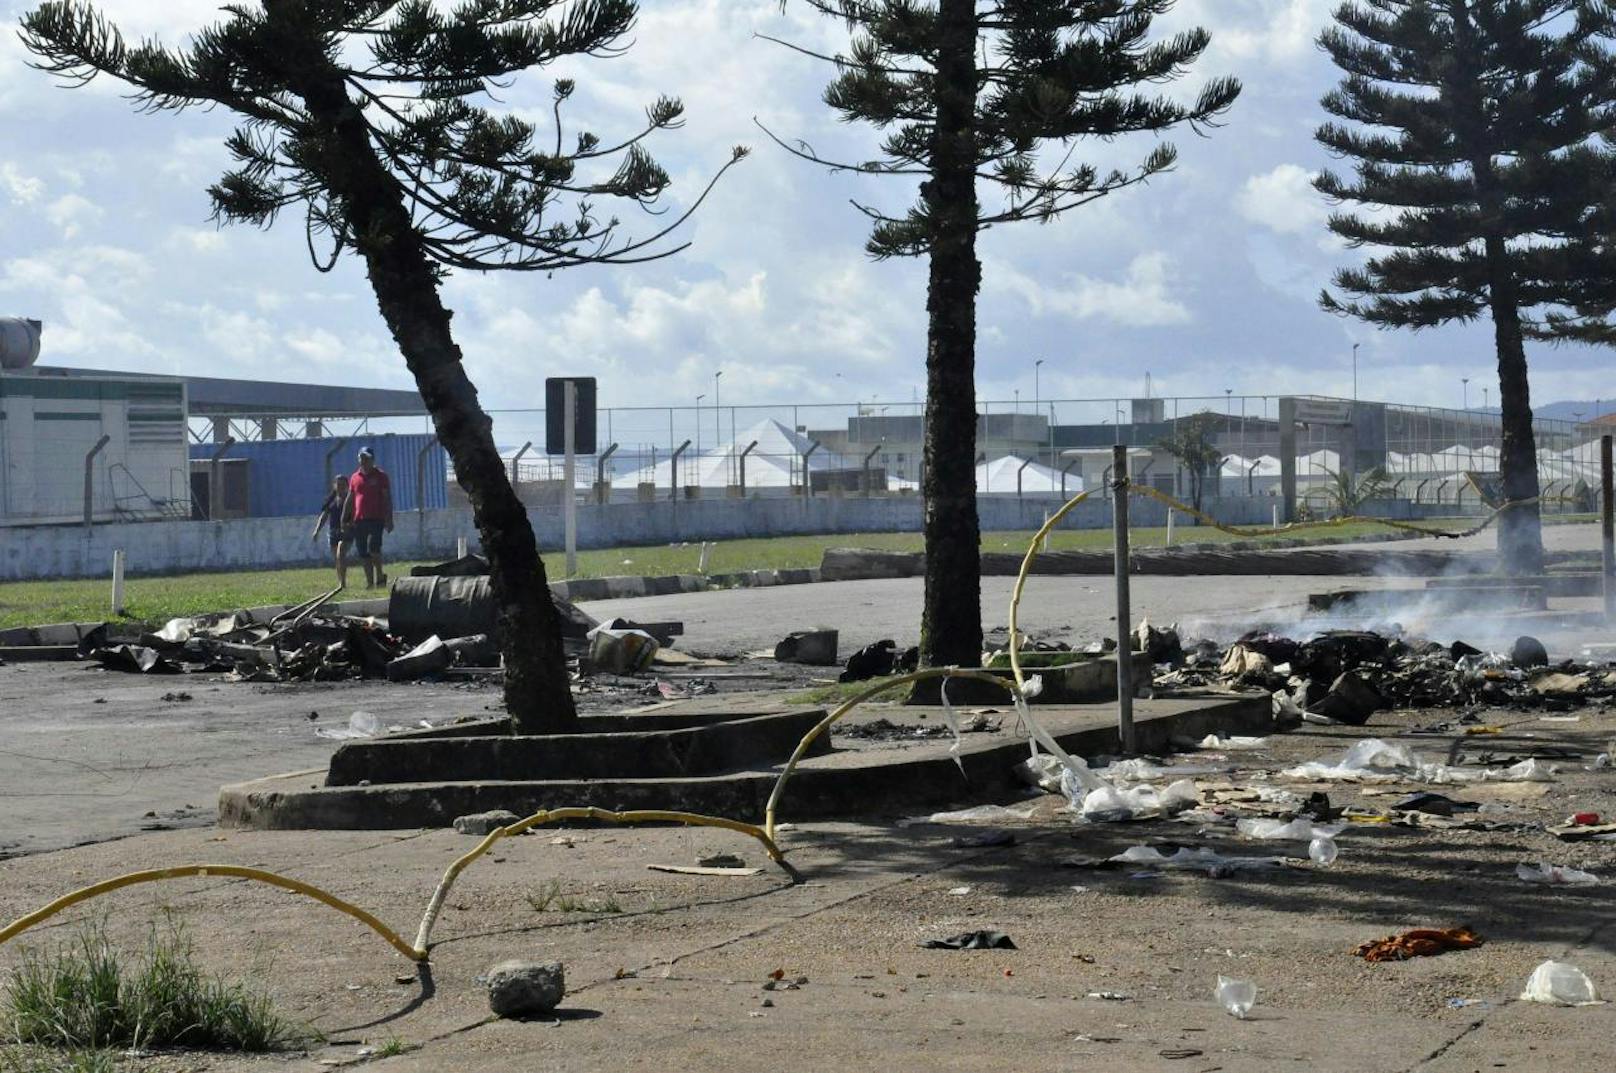 Die Lage sei eskaliert und Einwohner hätten gegen die Migranten protestiert sowie deren Lager fast vollständig zerstört, berichtete die Website des Senders Globo.